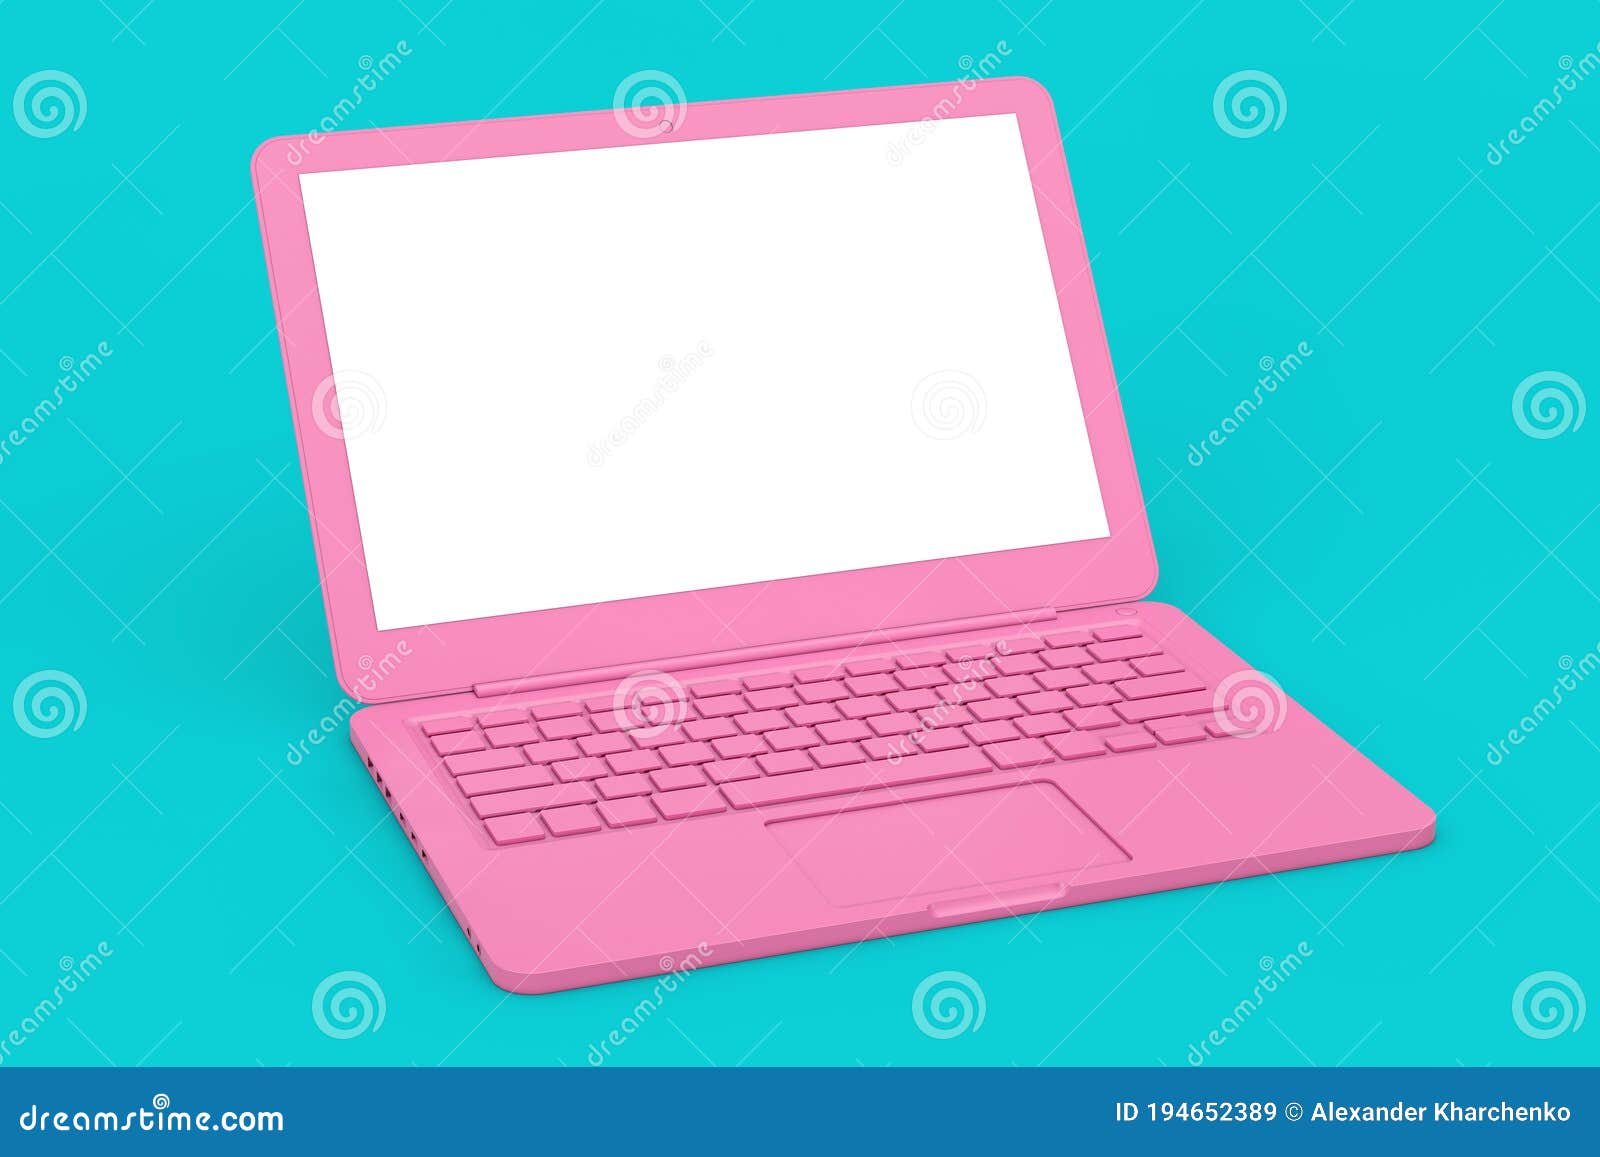 Máy tính xách tay màu hồng hiện đại với màn hình trống sẽ là người bạn đồng hành đáng tin cậy của bạn trong mọi việc. Màu hồng tươi trẻ và thiết kế đơn giản đem lại cảm giác sáng tạo và thú vị cho những ngày làm việc nhàm chán. Nhấn vào ảnh để khám phá thêm nhiều tính năng ấn tượng của máy tính này.